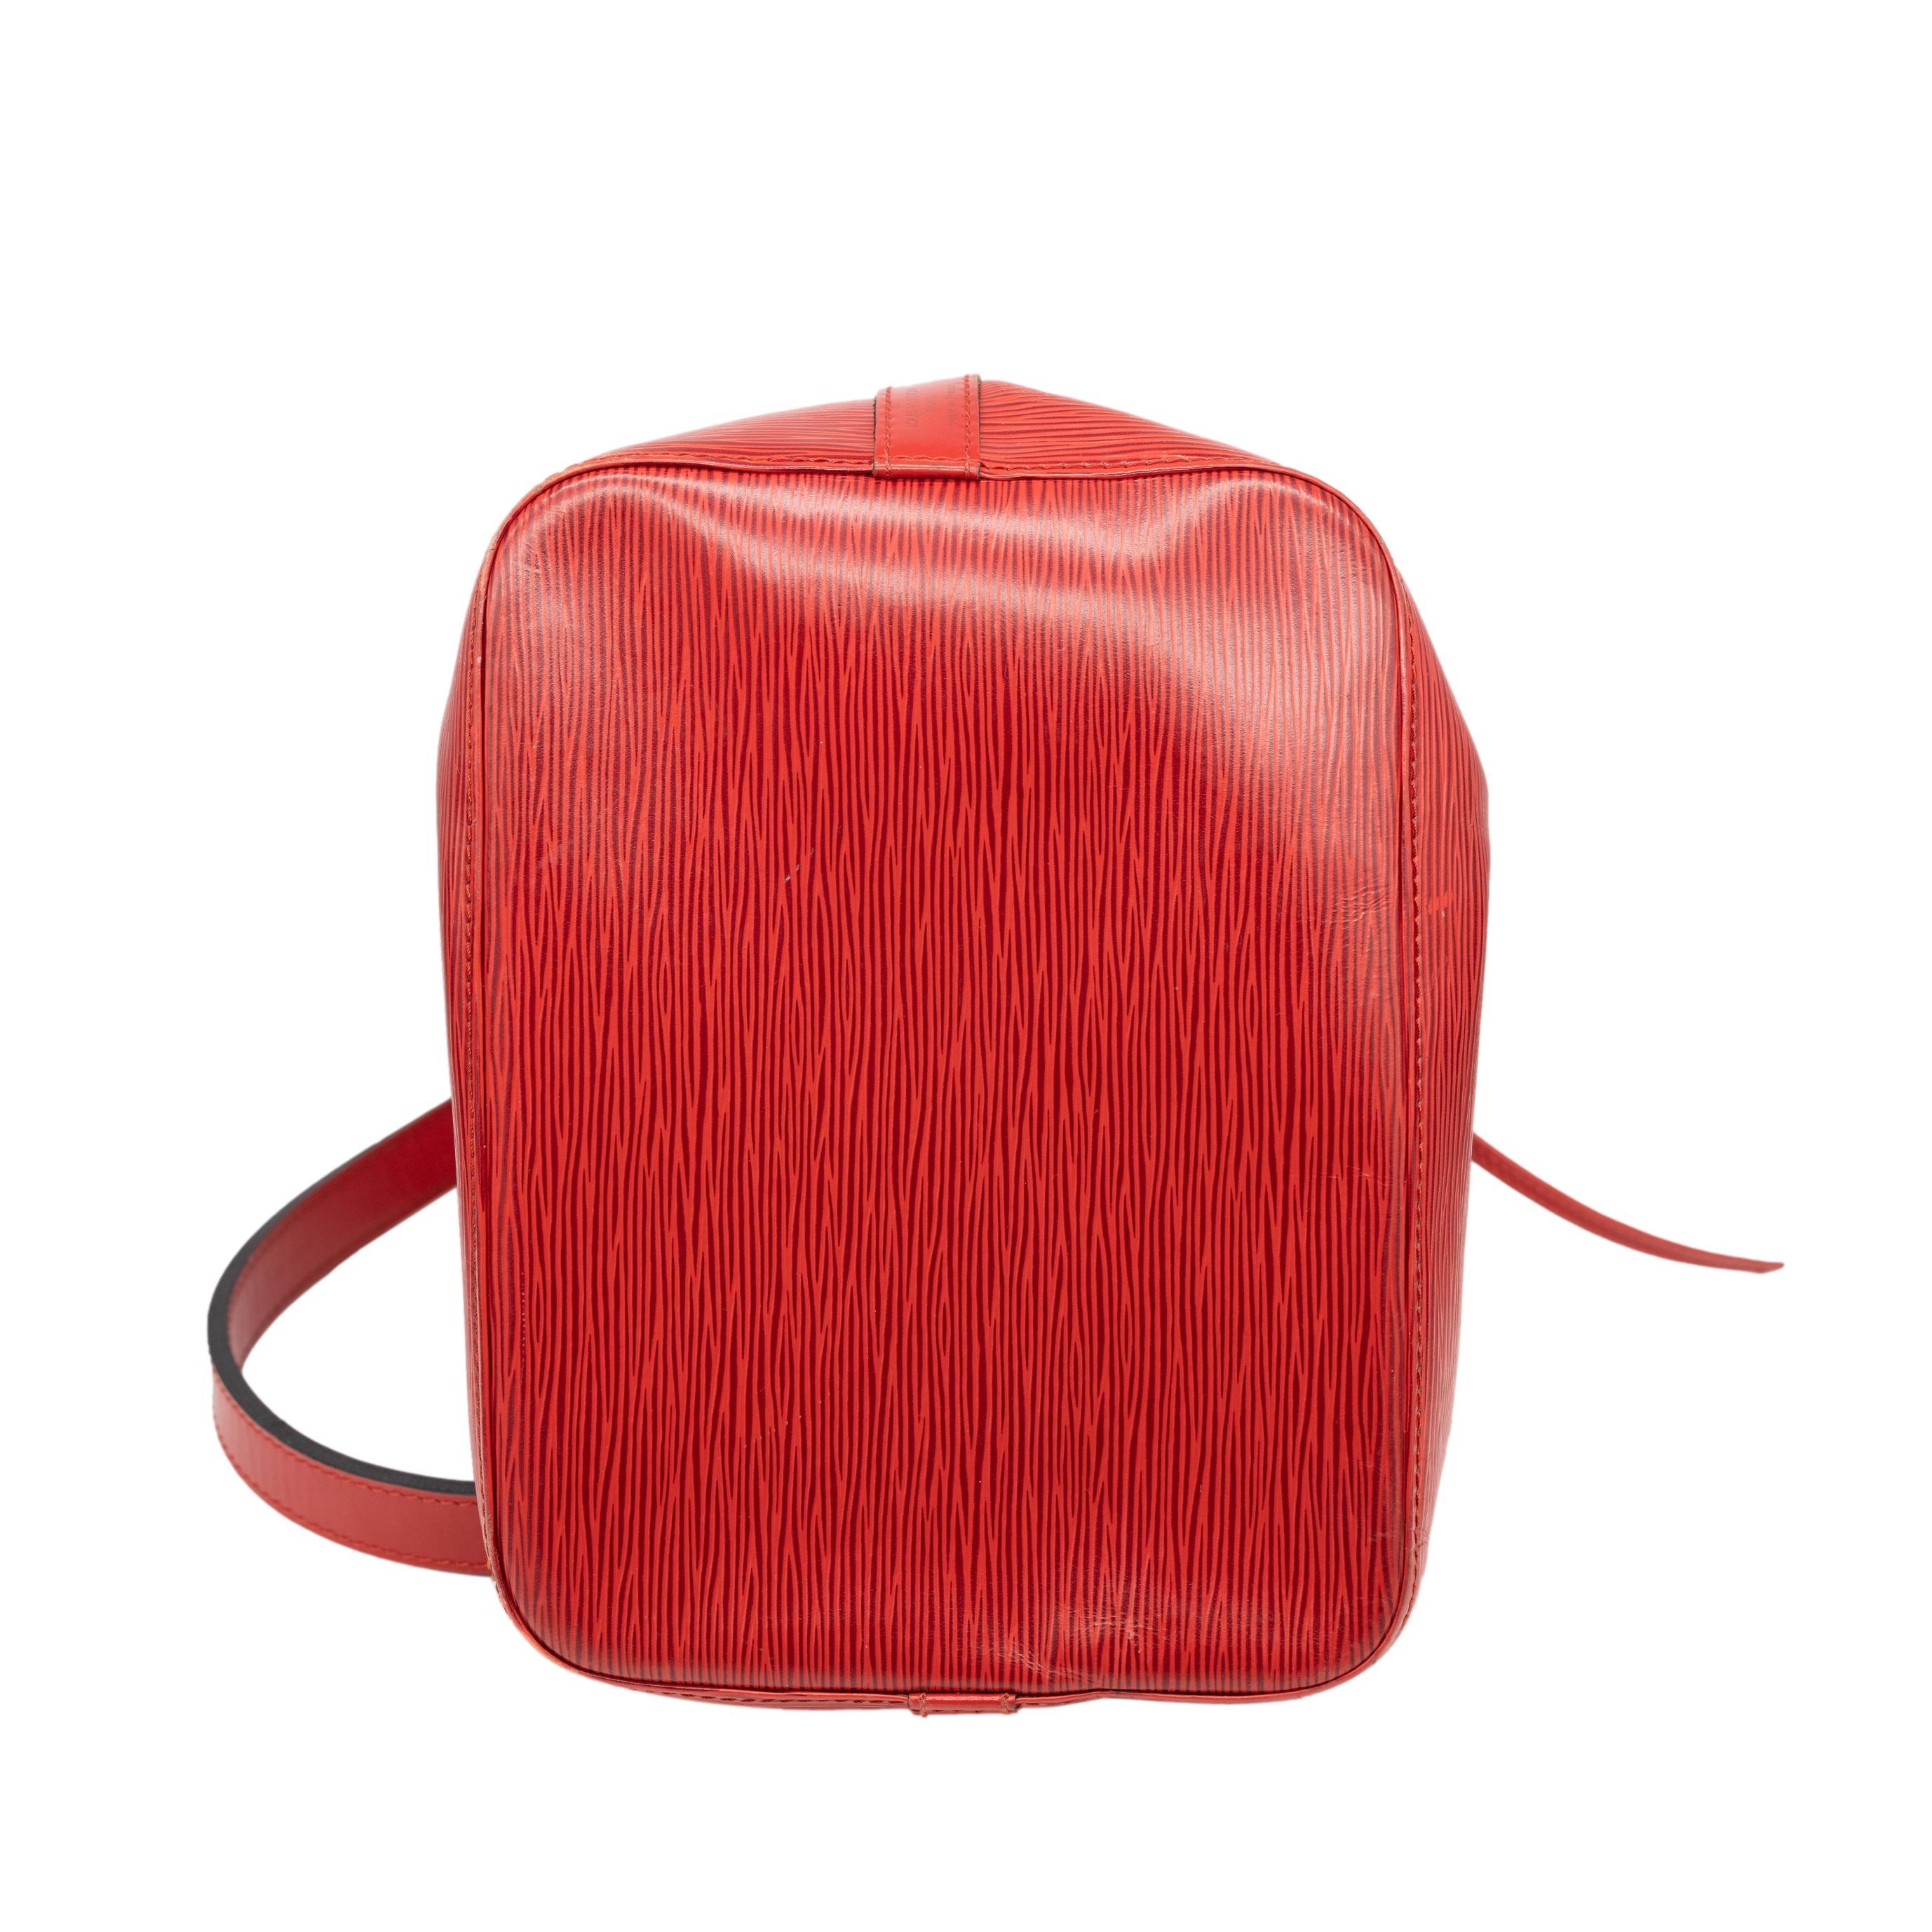 Louis Vuitton “Noe” PM Bucket Bag in Red EPI Leather Shoulder Bag, France 1993. 1